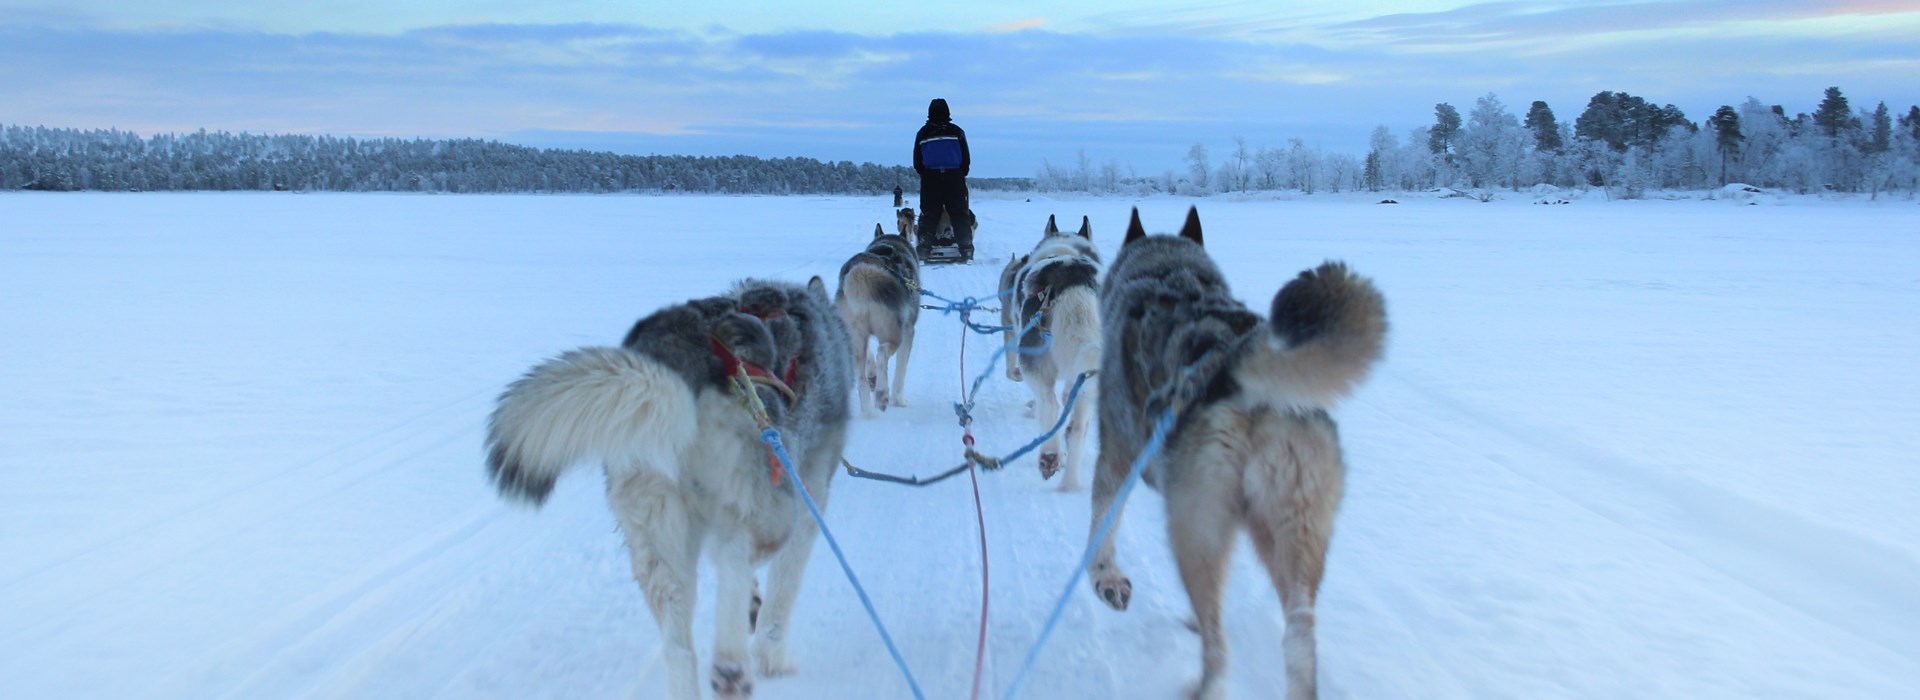 Visiter La Laponie en traîneau à chiens - Laponie